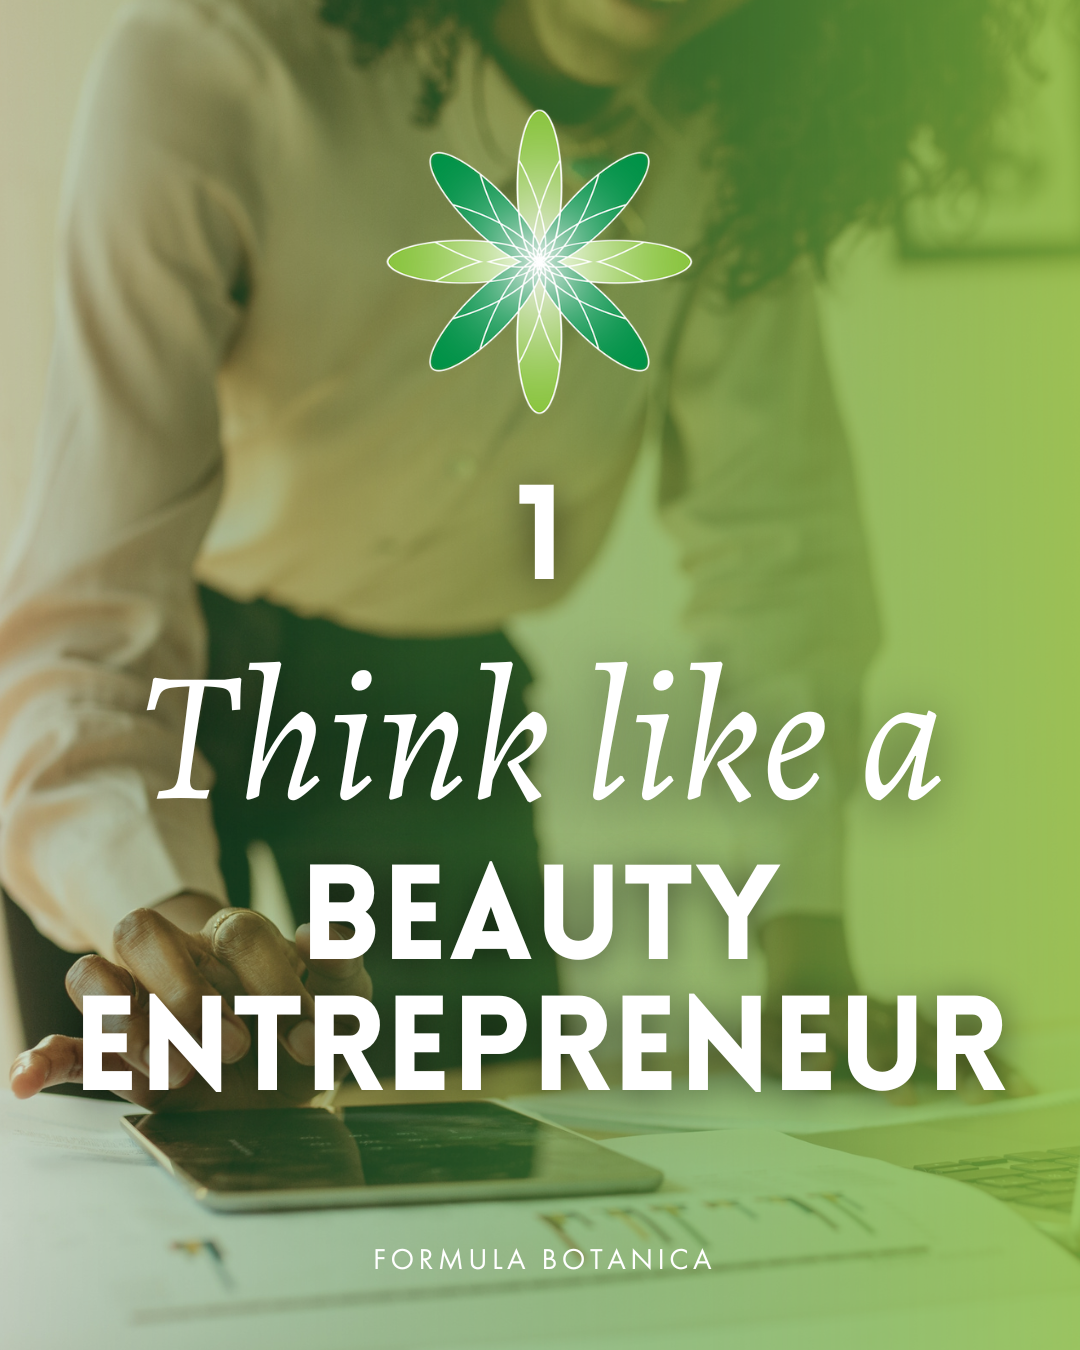 Think like a beauty entrepreneur